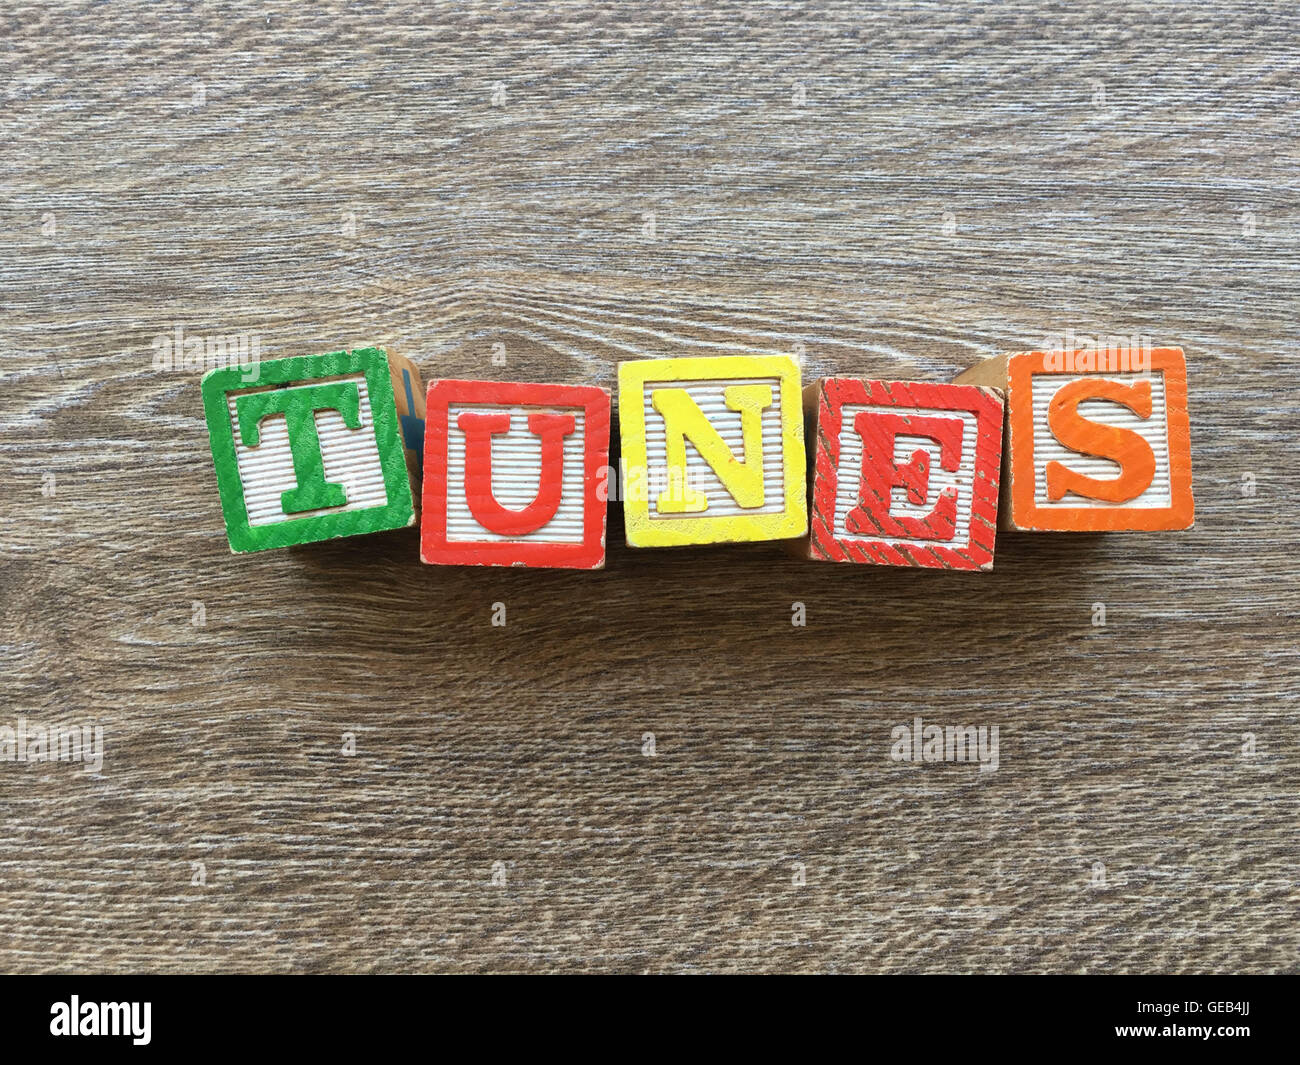 Cale en bois Alphabet lettres formant le mot TUNES, combinant les lettres jouets aident les enfants à apprendre et à écrire en anglais Banque D'Images